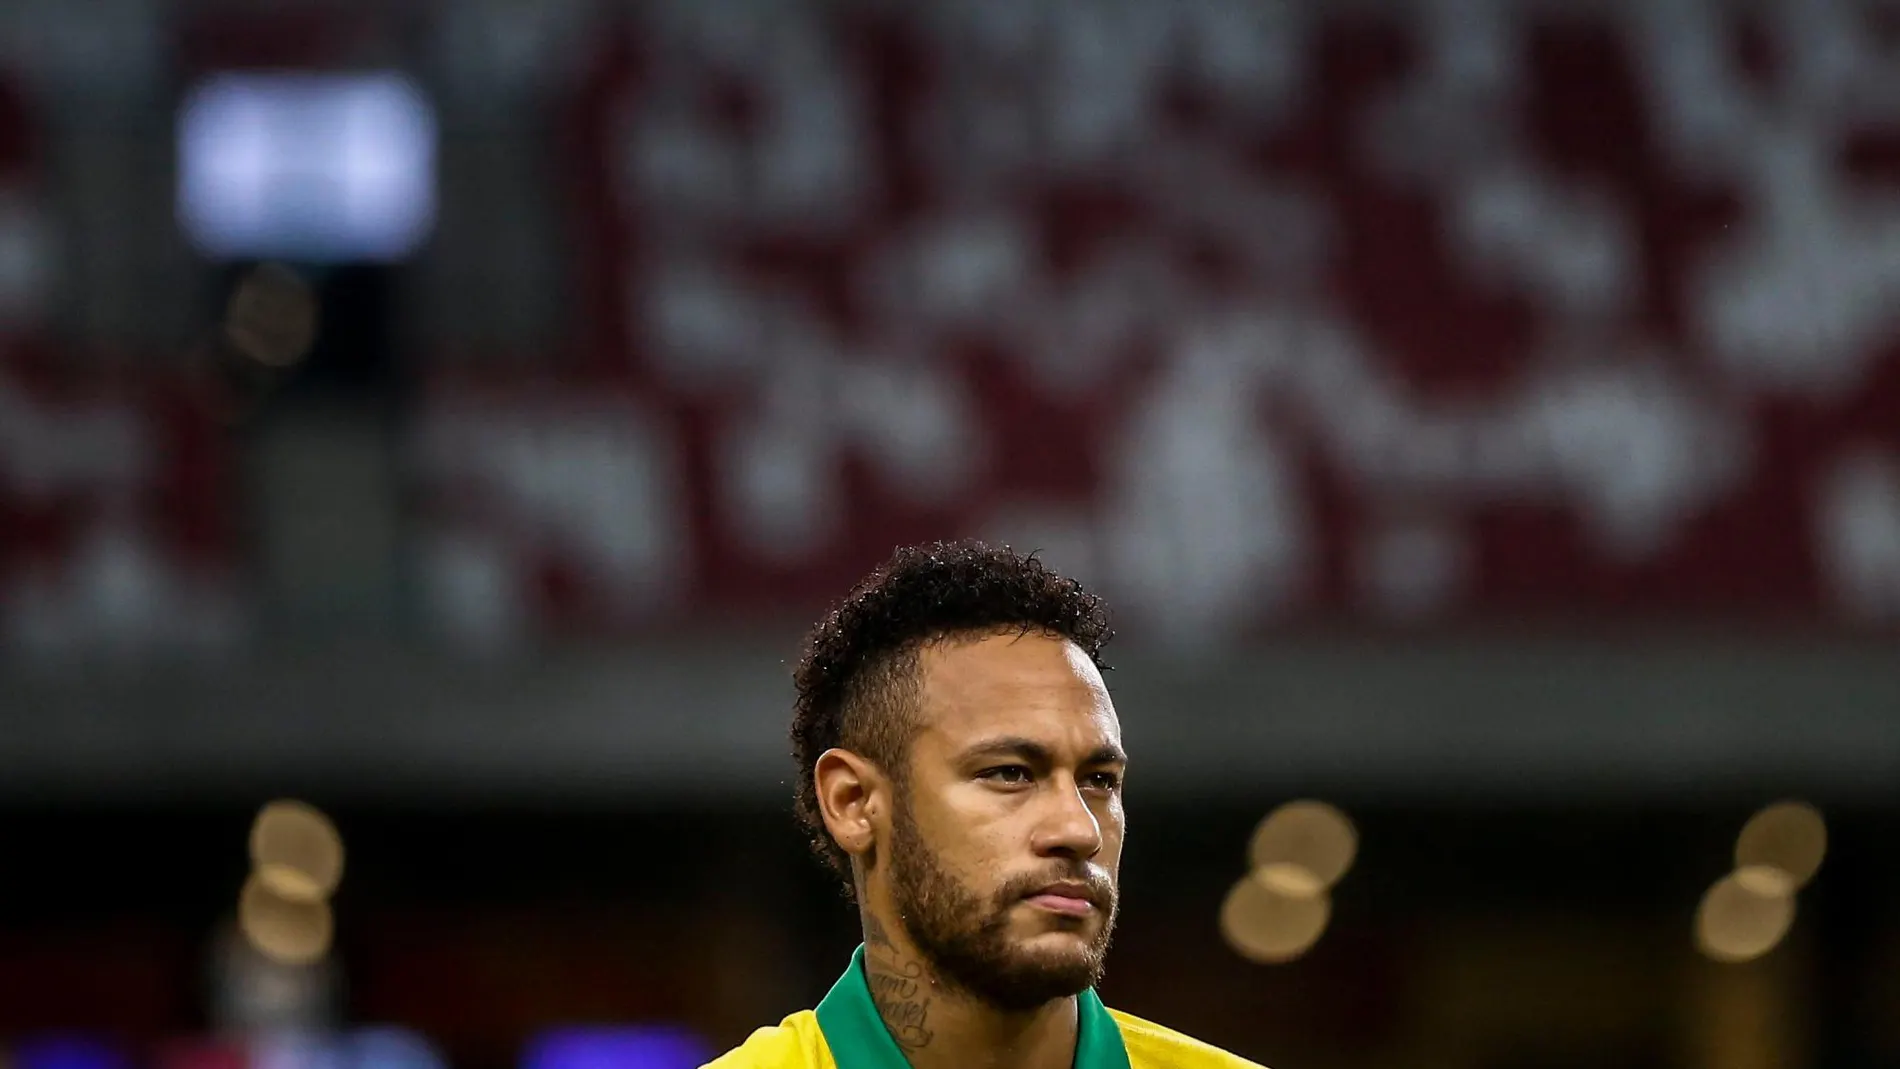 El tuit de Neymar tras su lesión